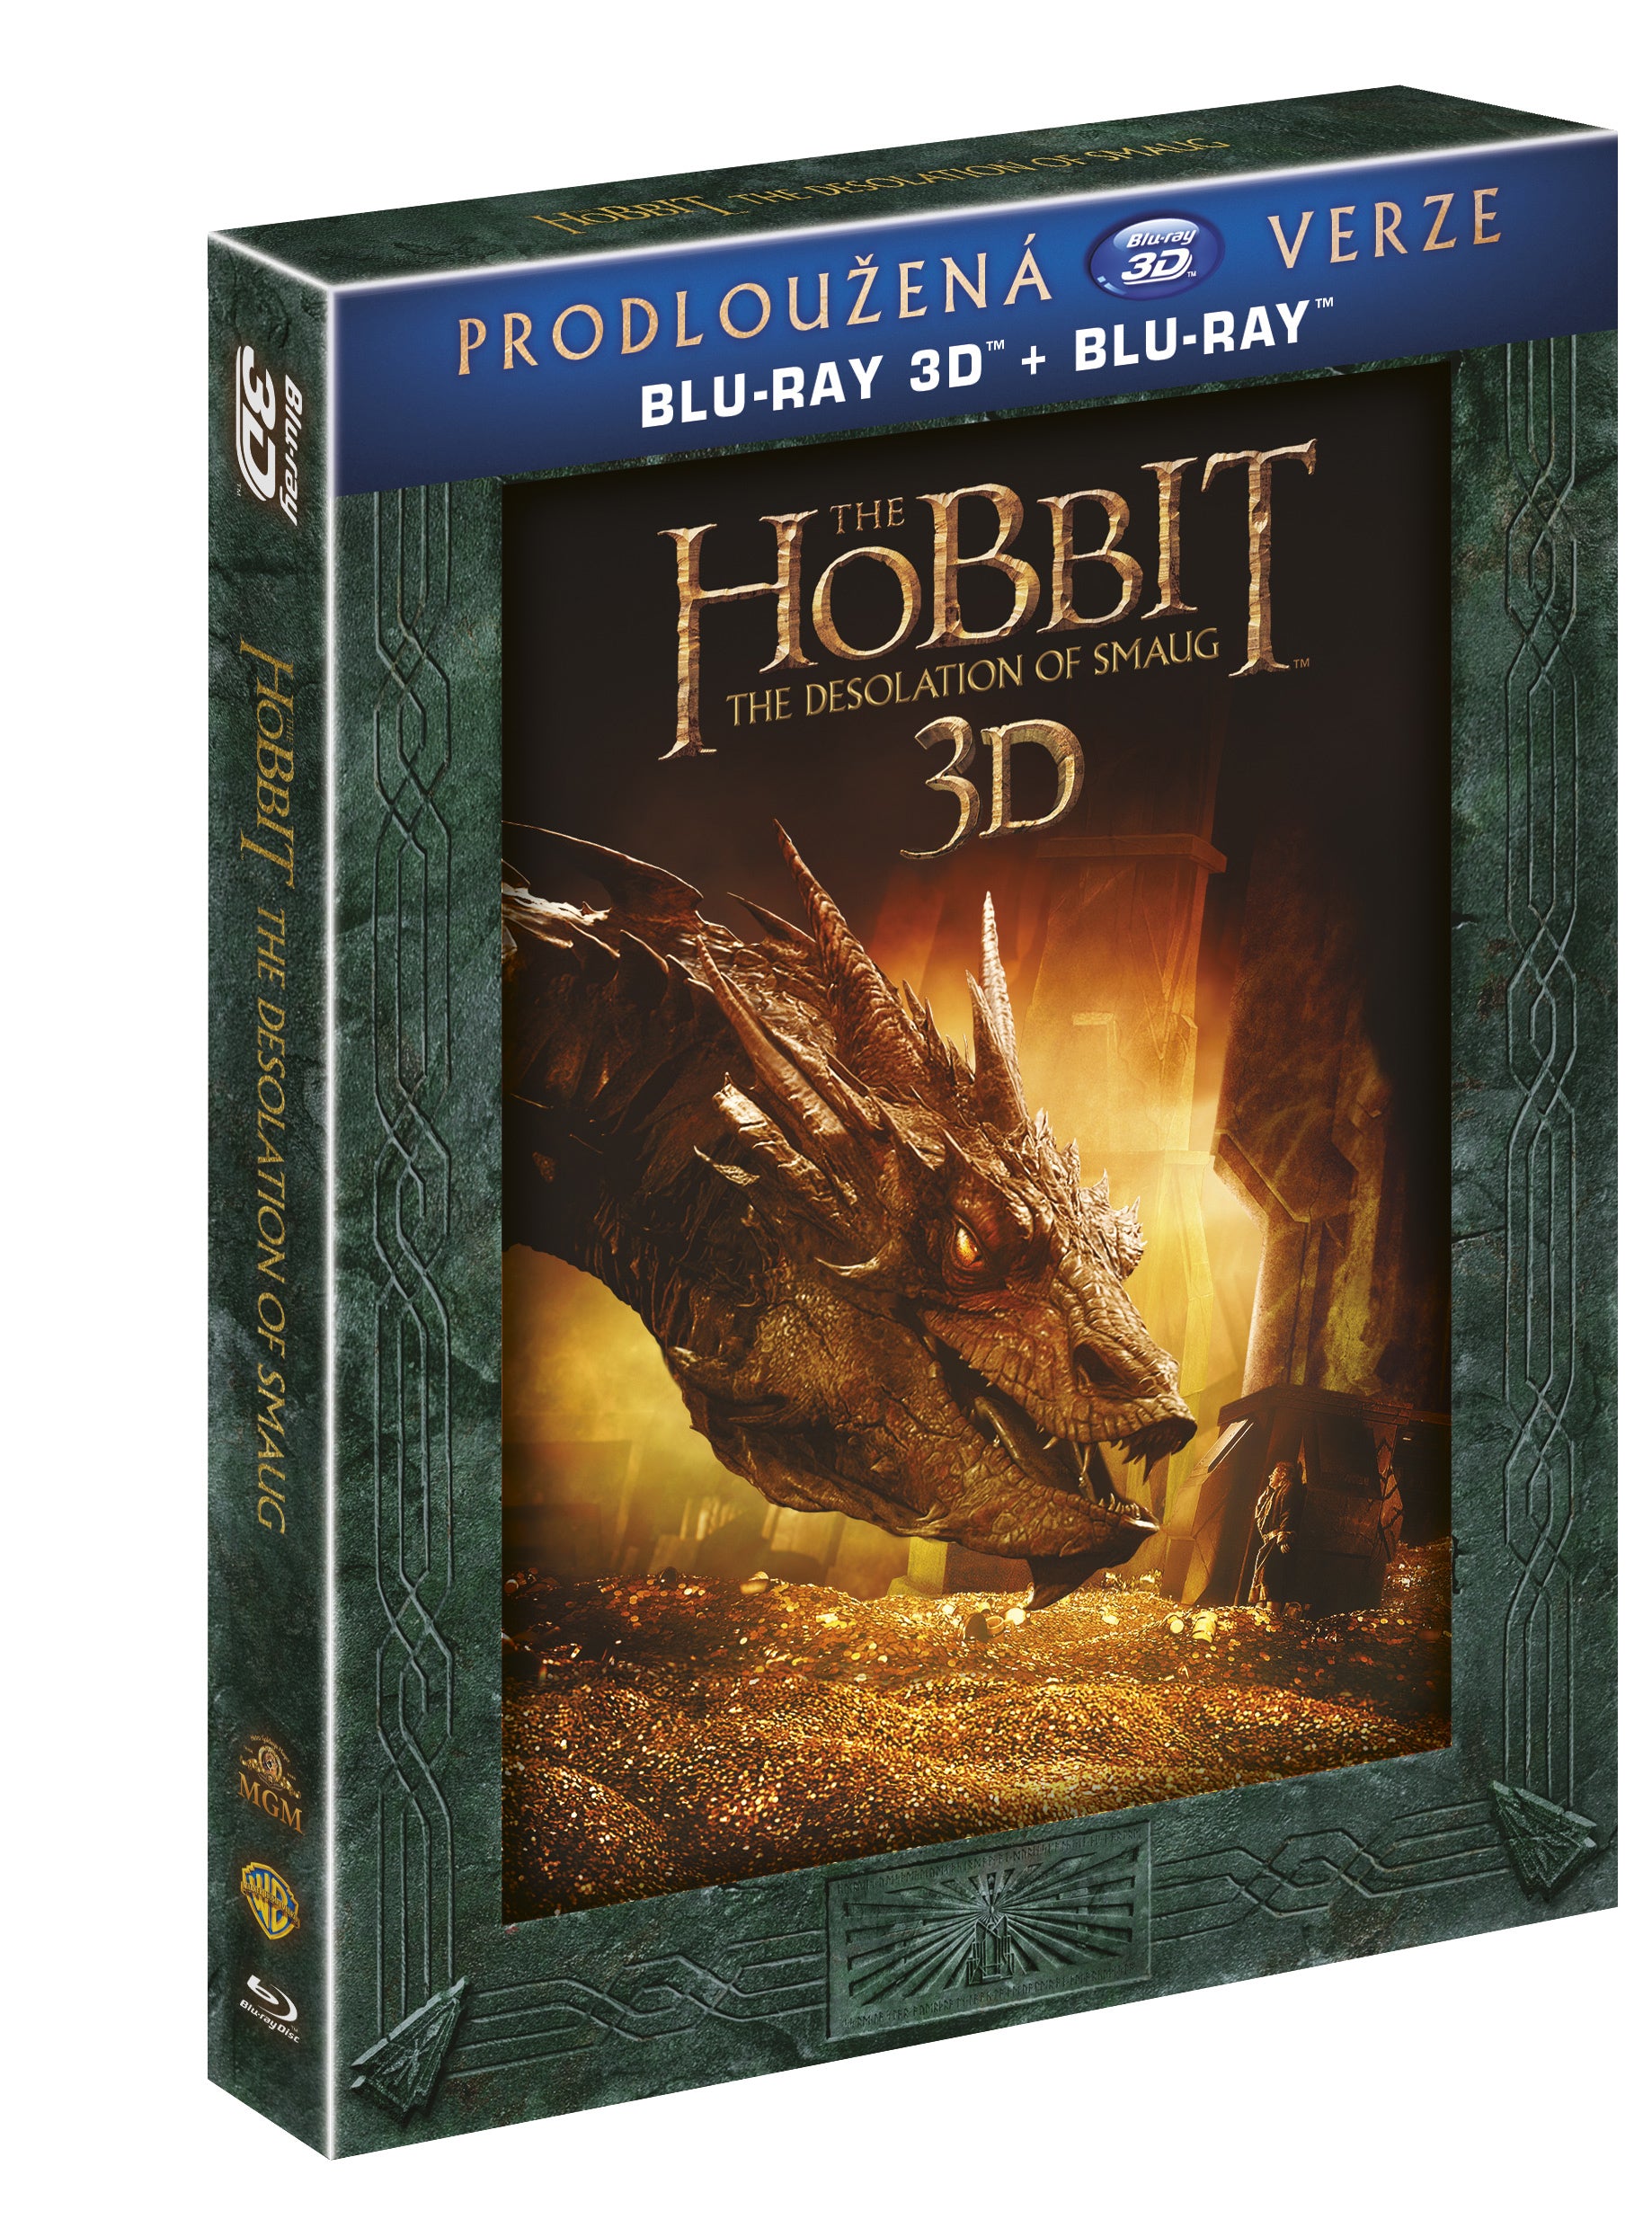 Hobit: Smakova draci poust - prodlouzena verze 5BD (3D+2D) / The Hobbit: The Desolation of Smaug - Extended Edition - Czech version